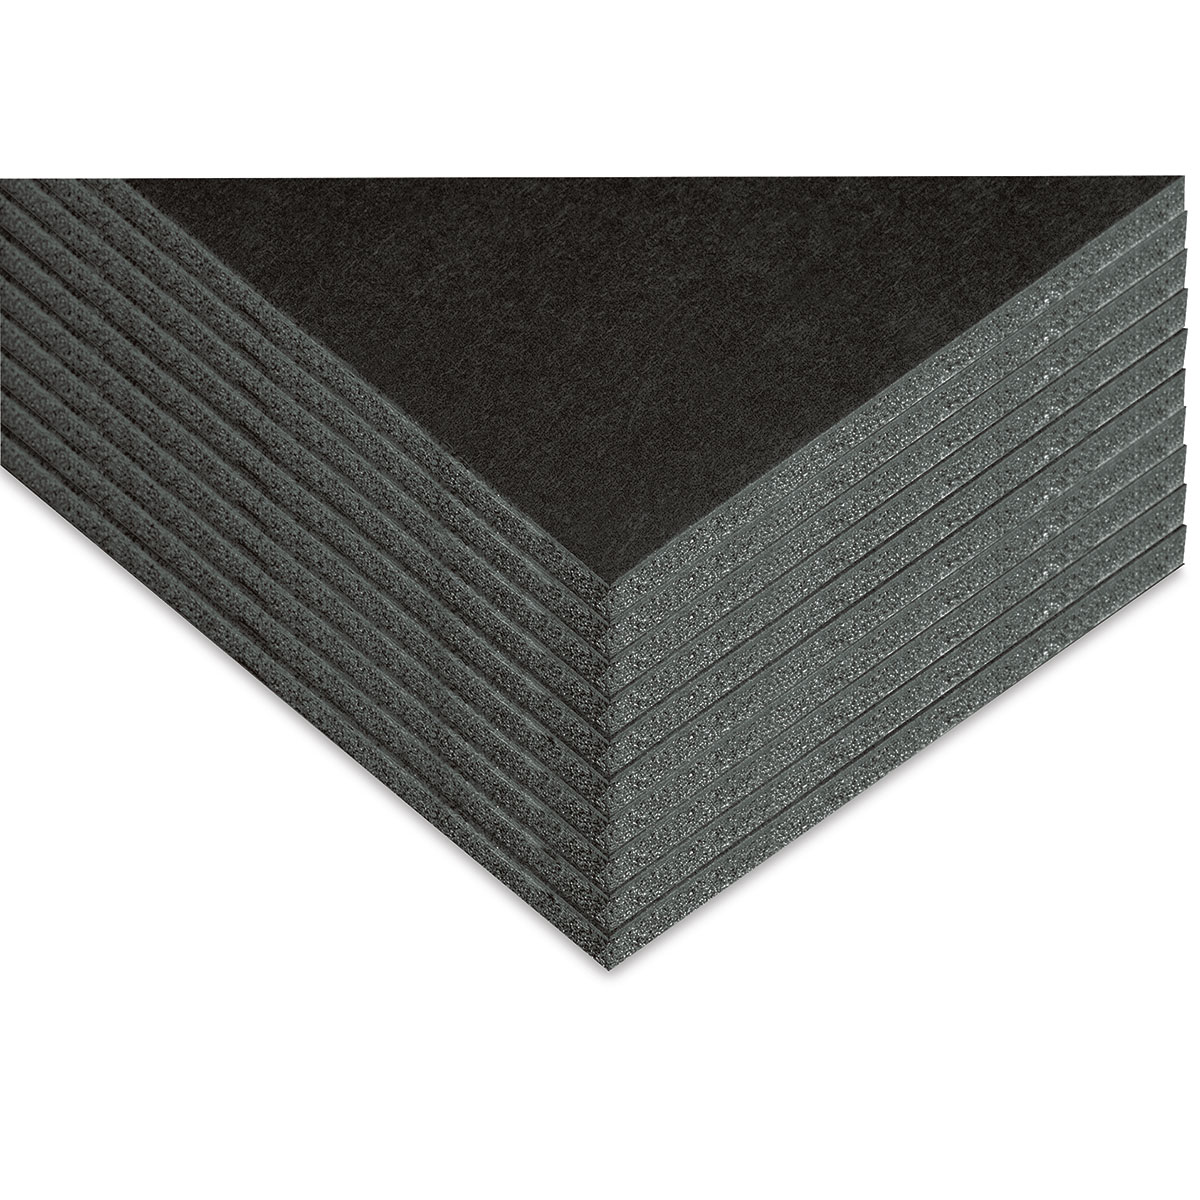 Blackcore Foam Board - 30 x 40 x 1/2, Black, Single Sheet